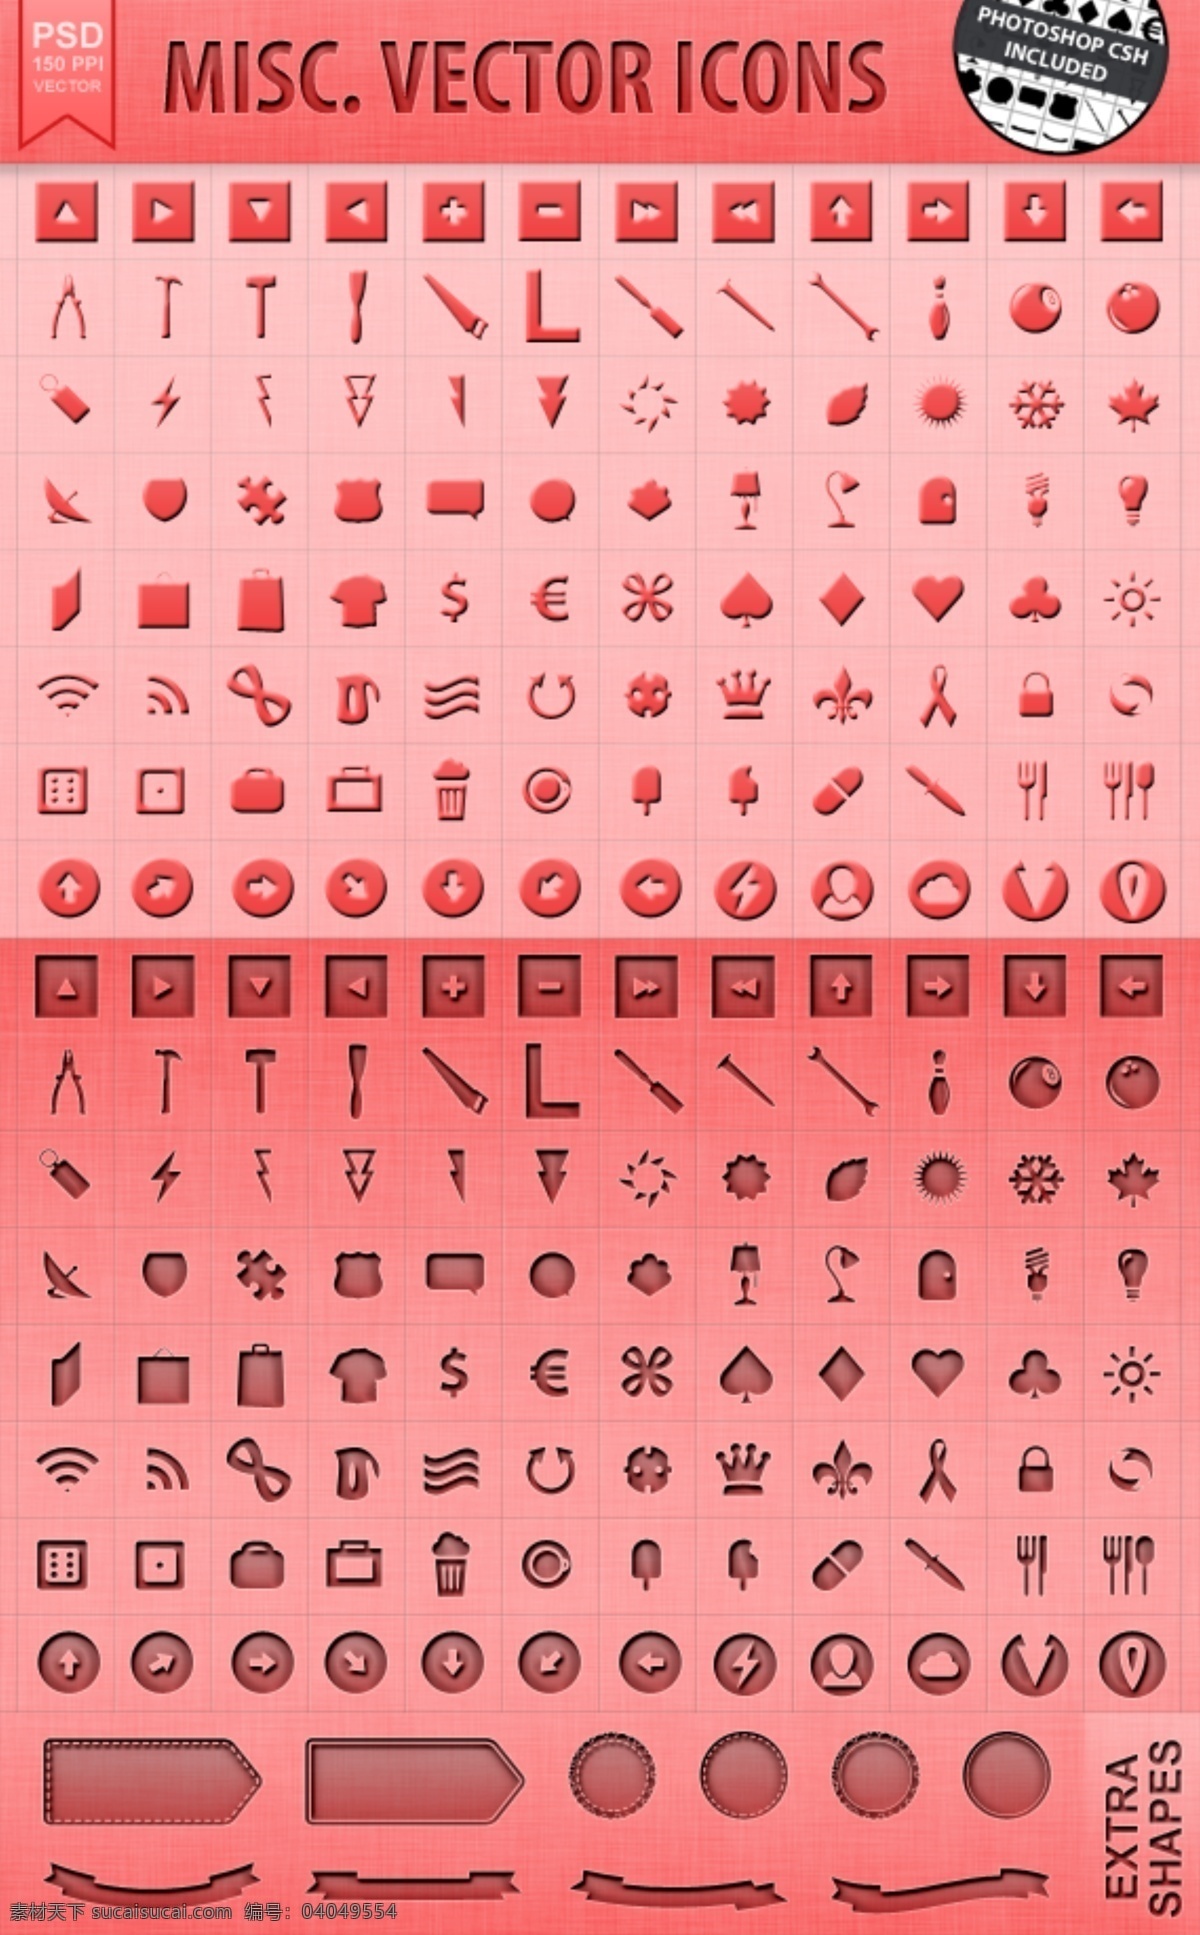 矢量 形状 符号 图标 web 包 创意 粉红色的 高分辨率 接口 免费 清洁 时尚的 现代的 独特的 原始的 质量 新鲜的 设计新的 hd 元素 用户界面 ui元素 详细的 雕文 集 csh psd源文件